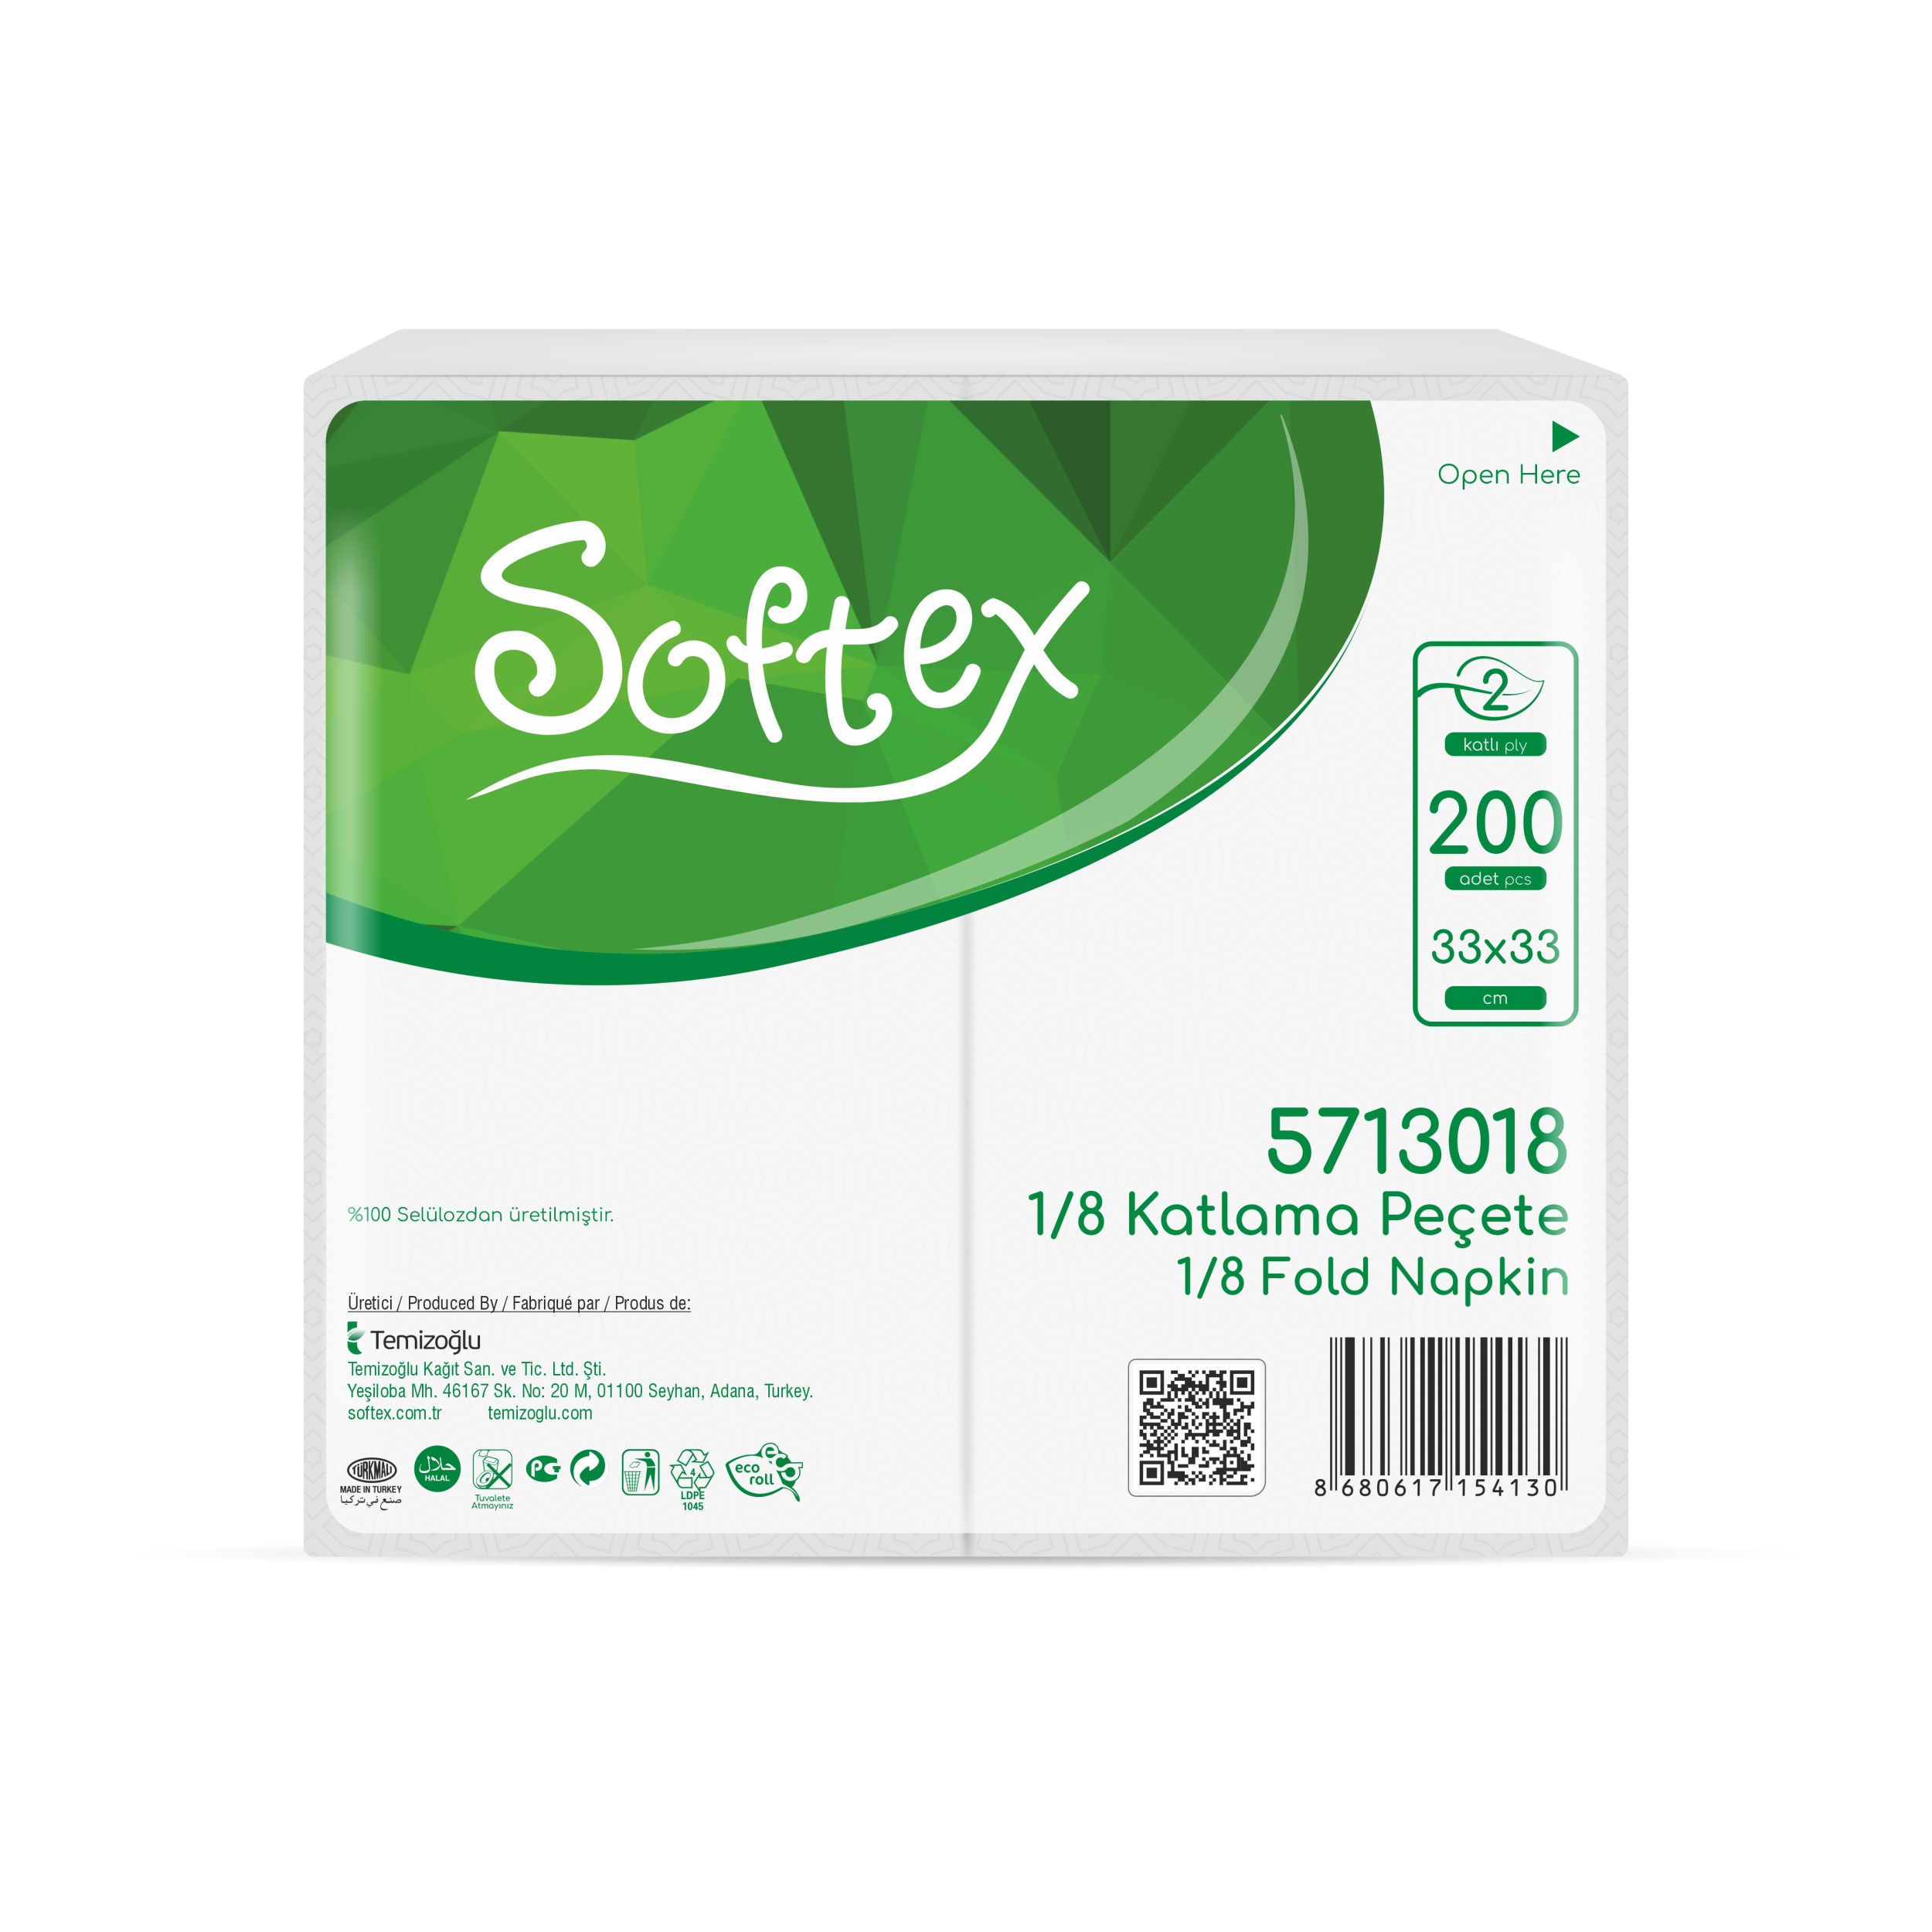 Softex 1/8 Fold Napkin 20*200 Pcs